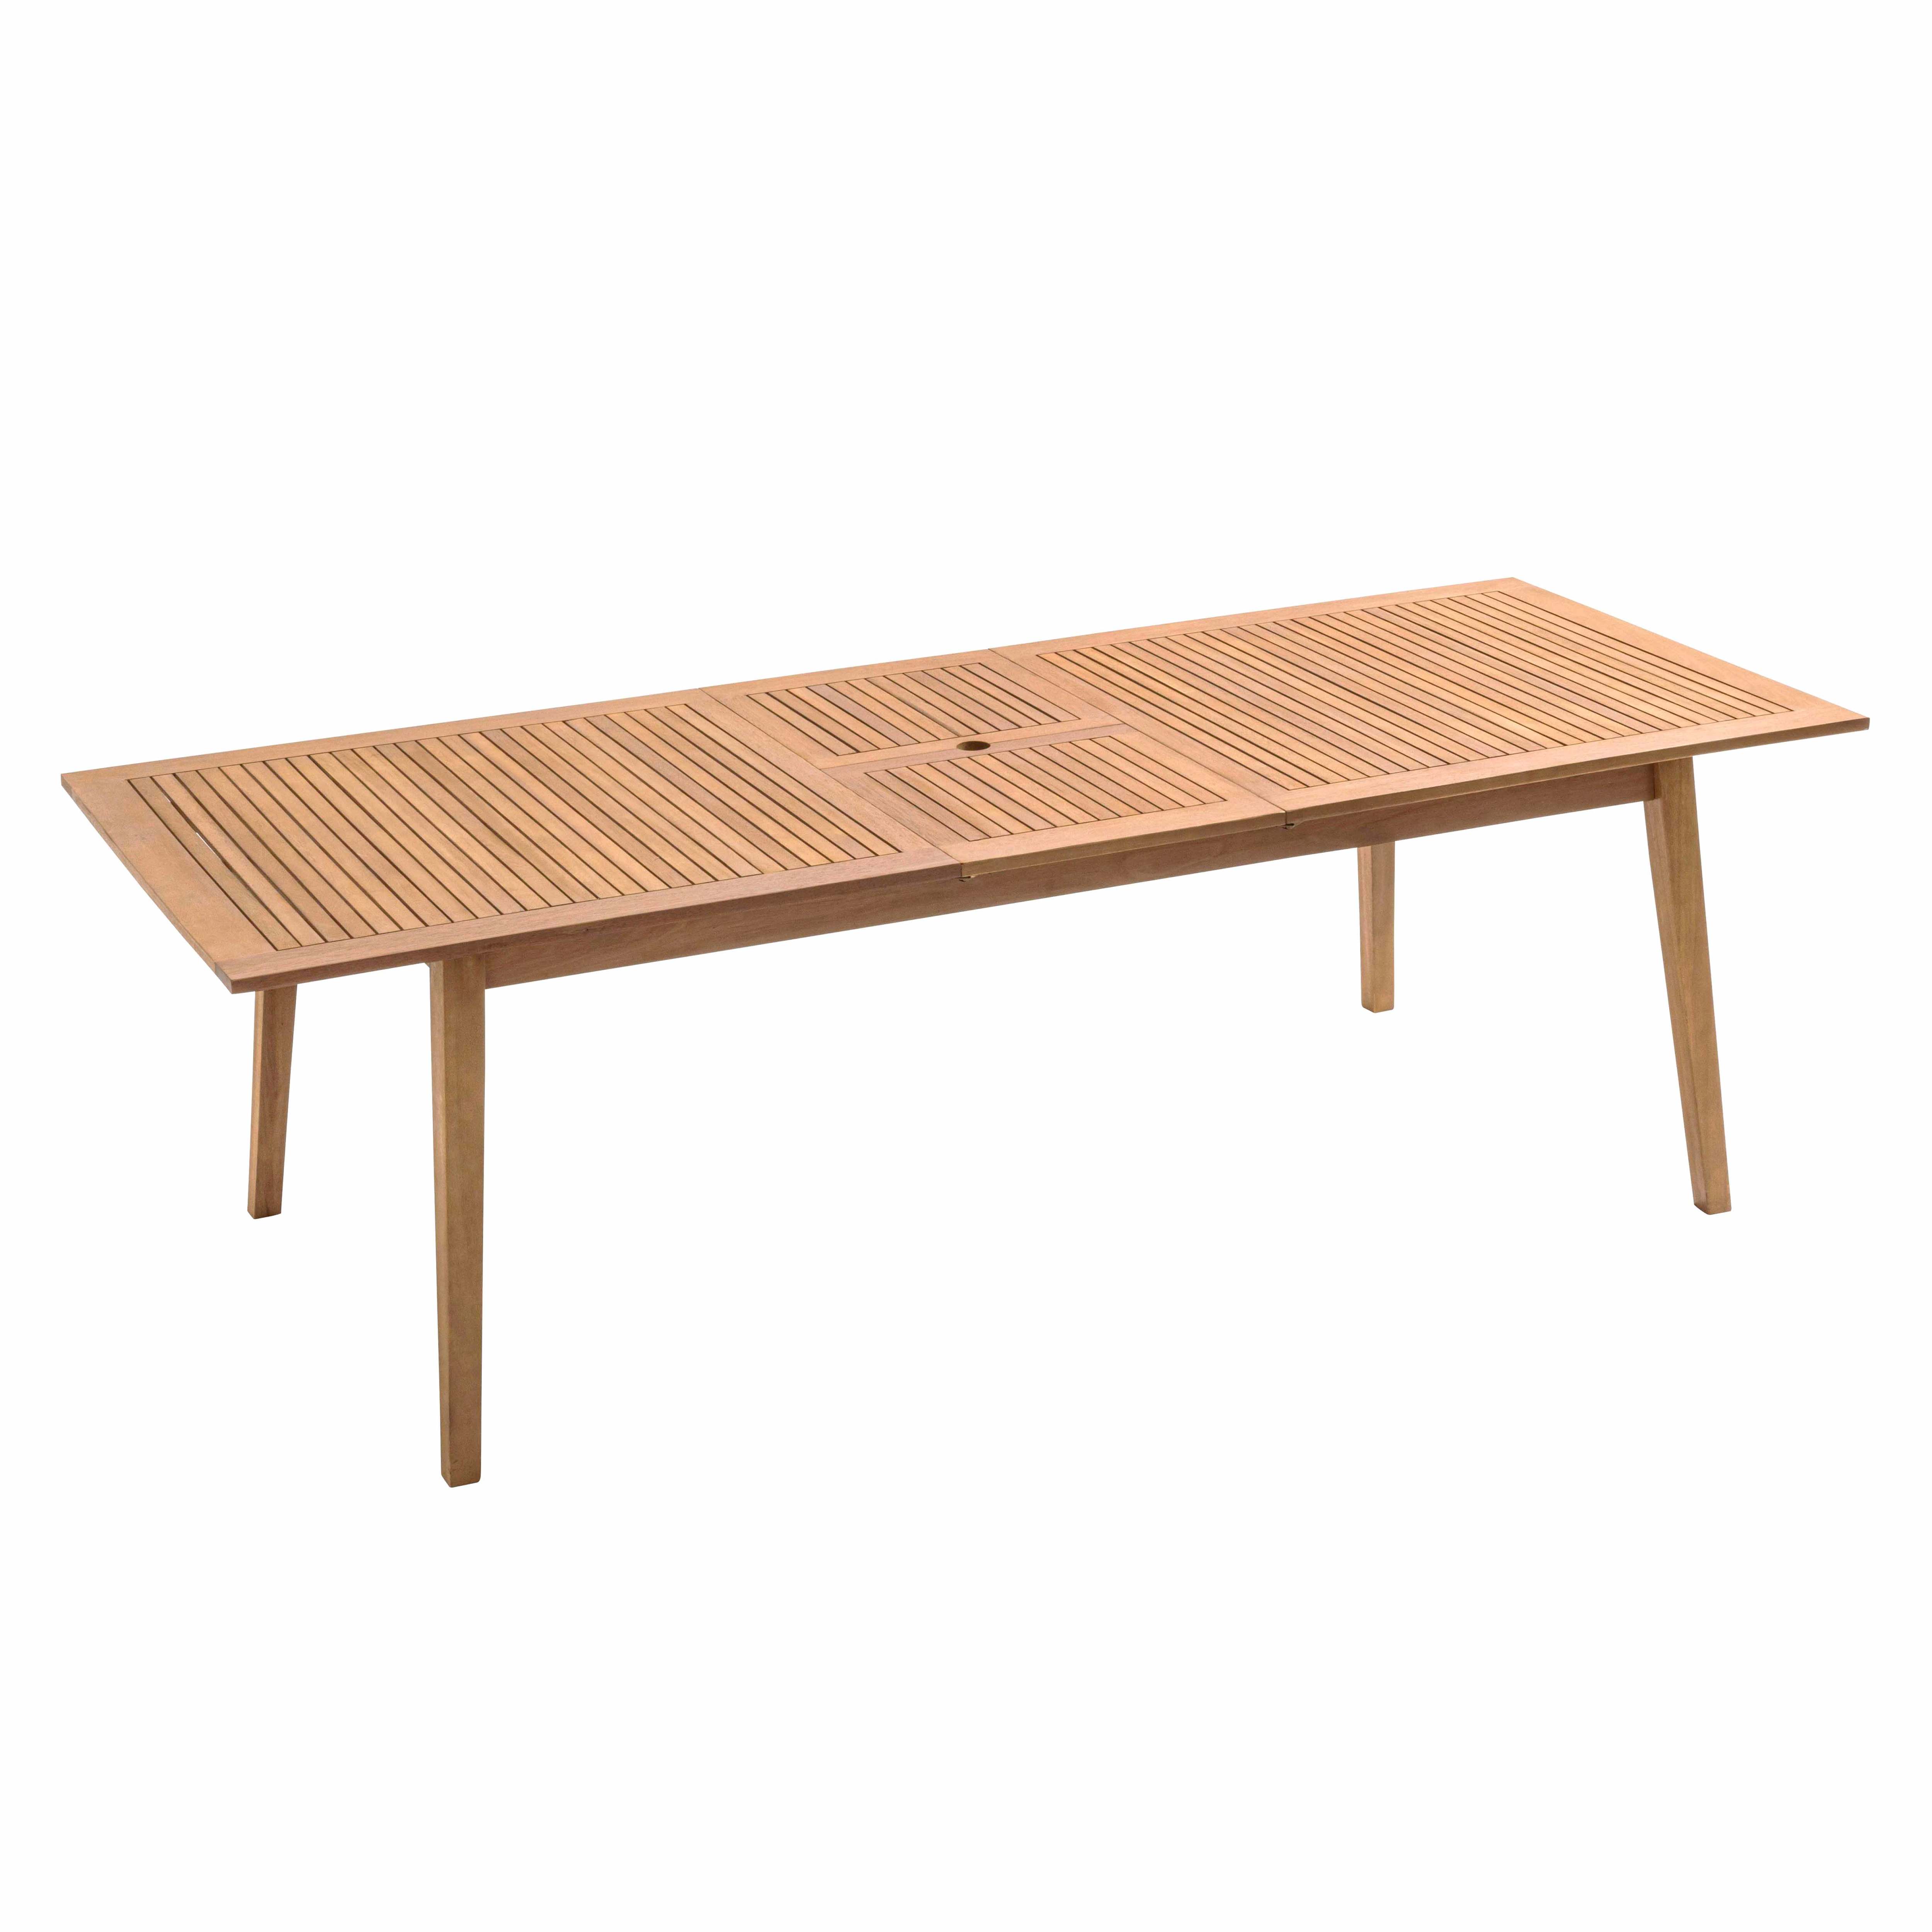 Table extensible eucalyptus marron